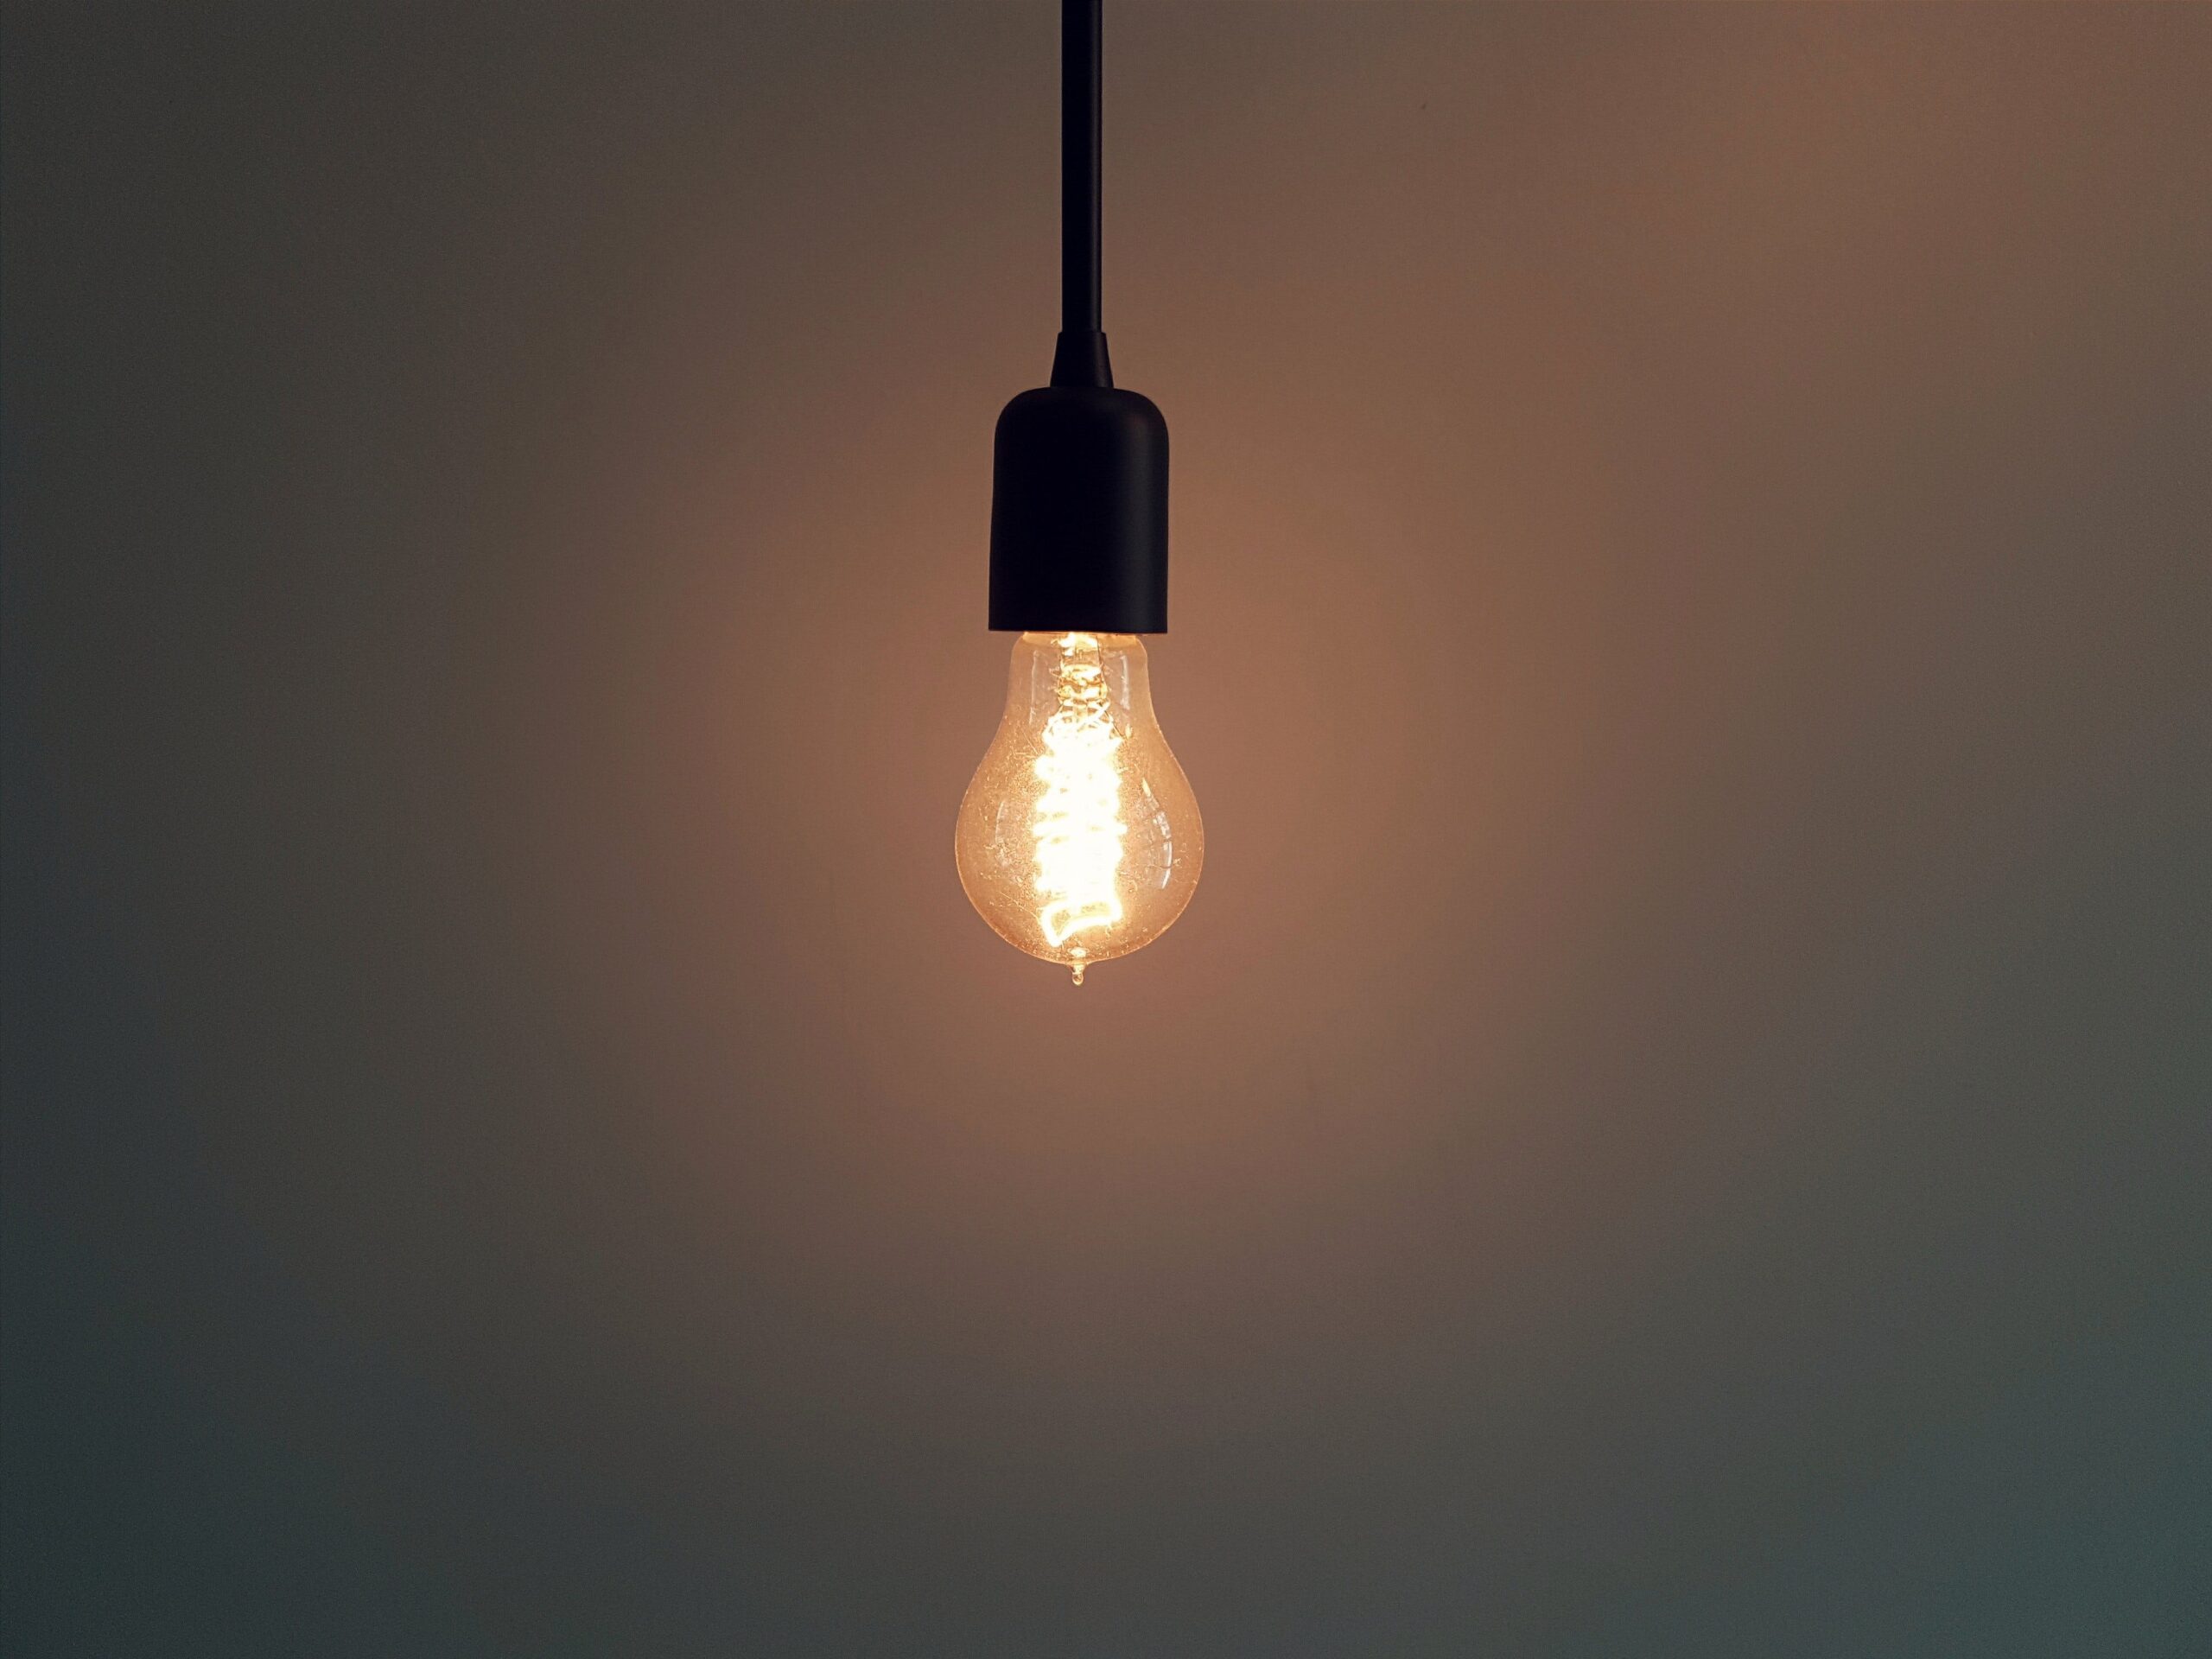 Якщо кожен вимкне зайву лампочку в пікові години, то можна уникнути відключень світла — Рябцев